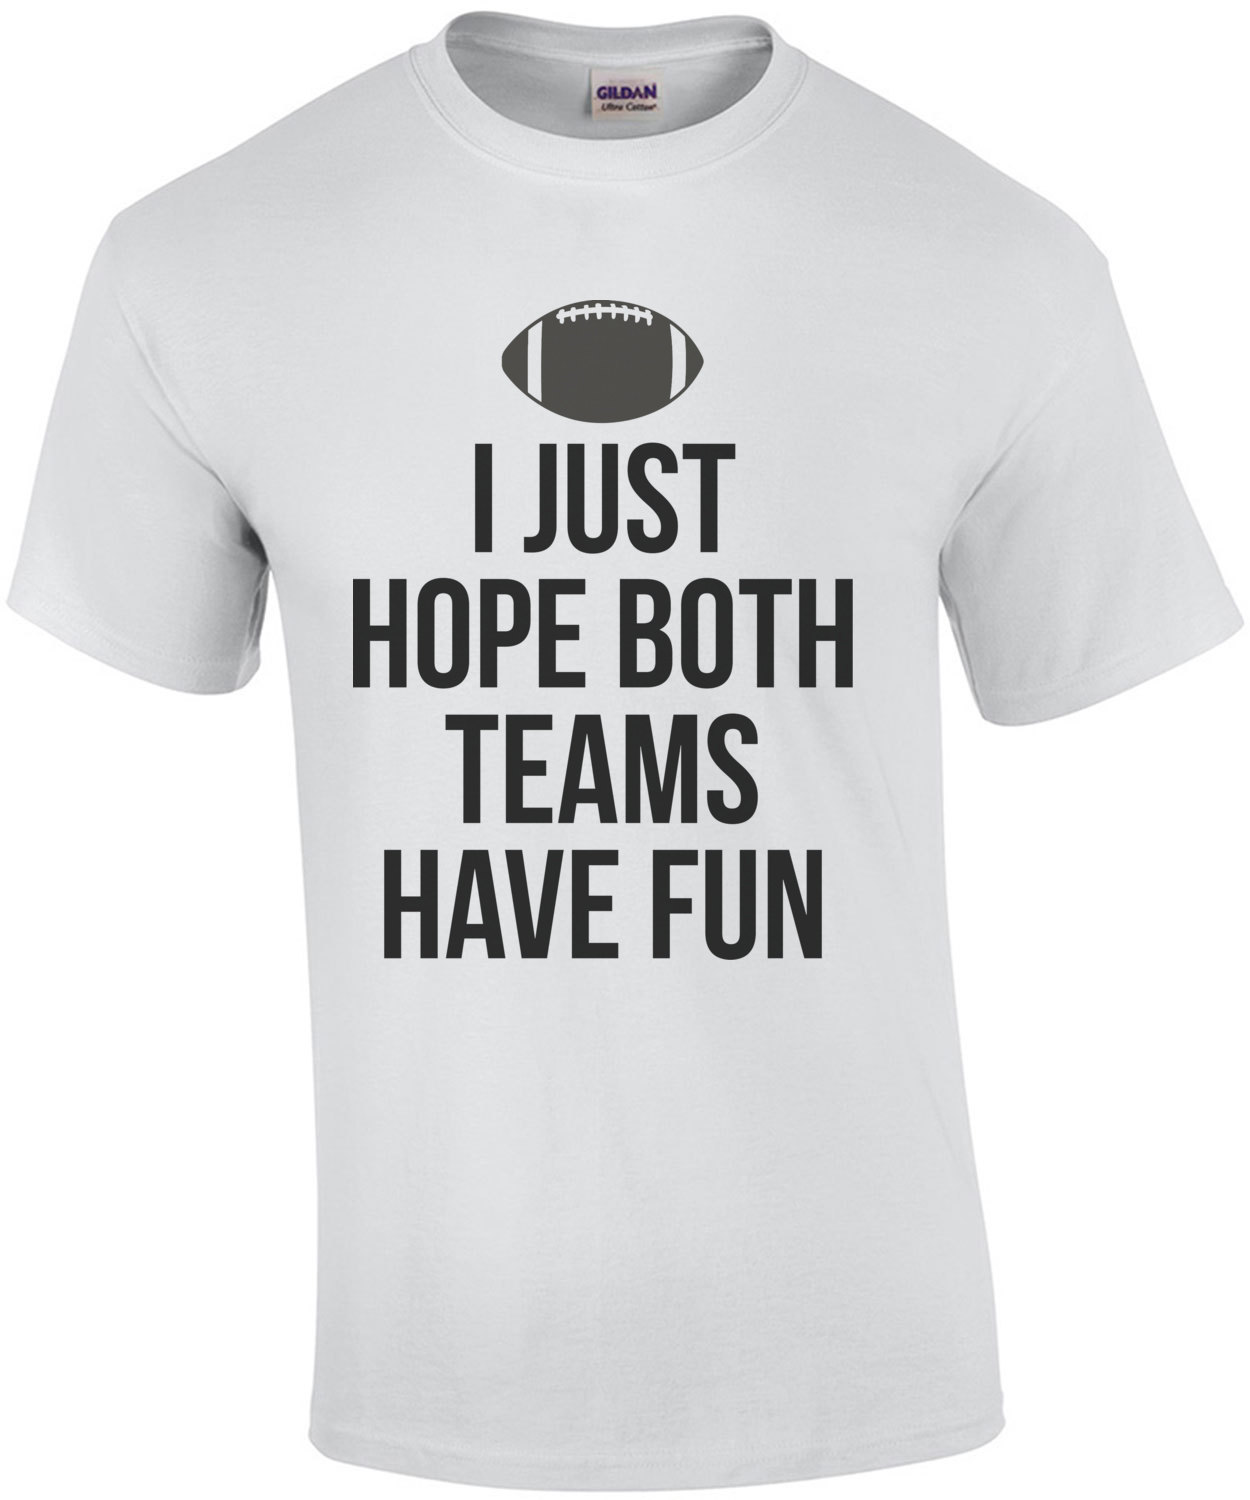 I Just Hope I Just Hope Both Teams Have Fun T-shirt Game Day Shirt Sports Shirt Football Tee Both Teams Have Fun Funny Football Shirt